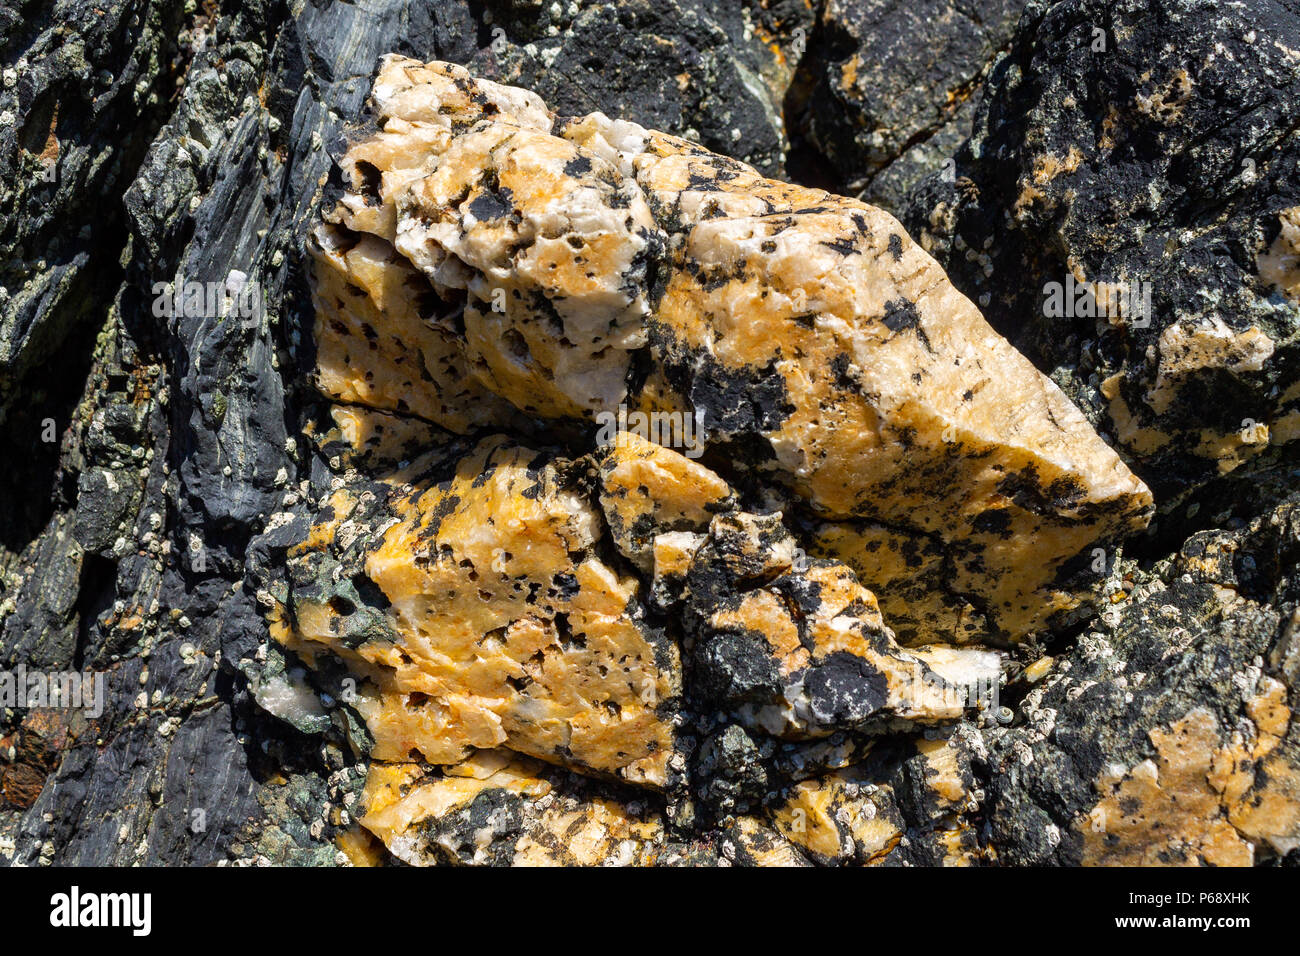 Vene di quarzo in roccia su una spiaggia, West Cork, Irlanda. Foto Stock